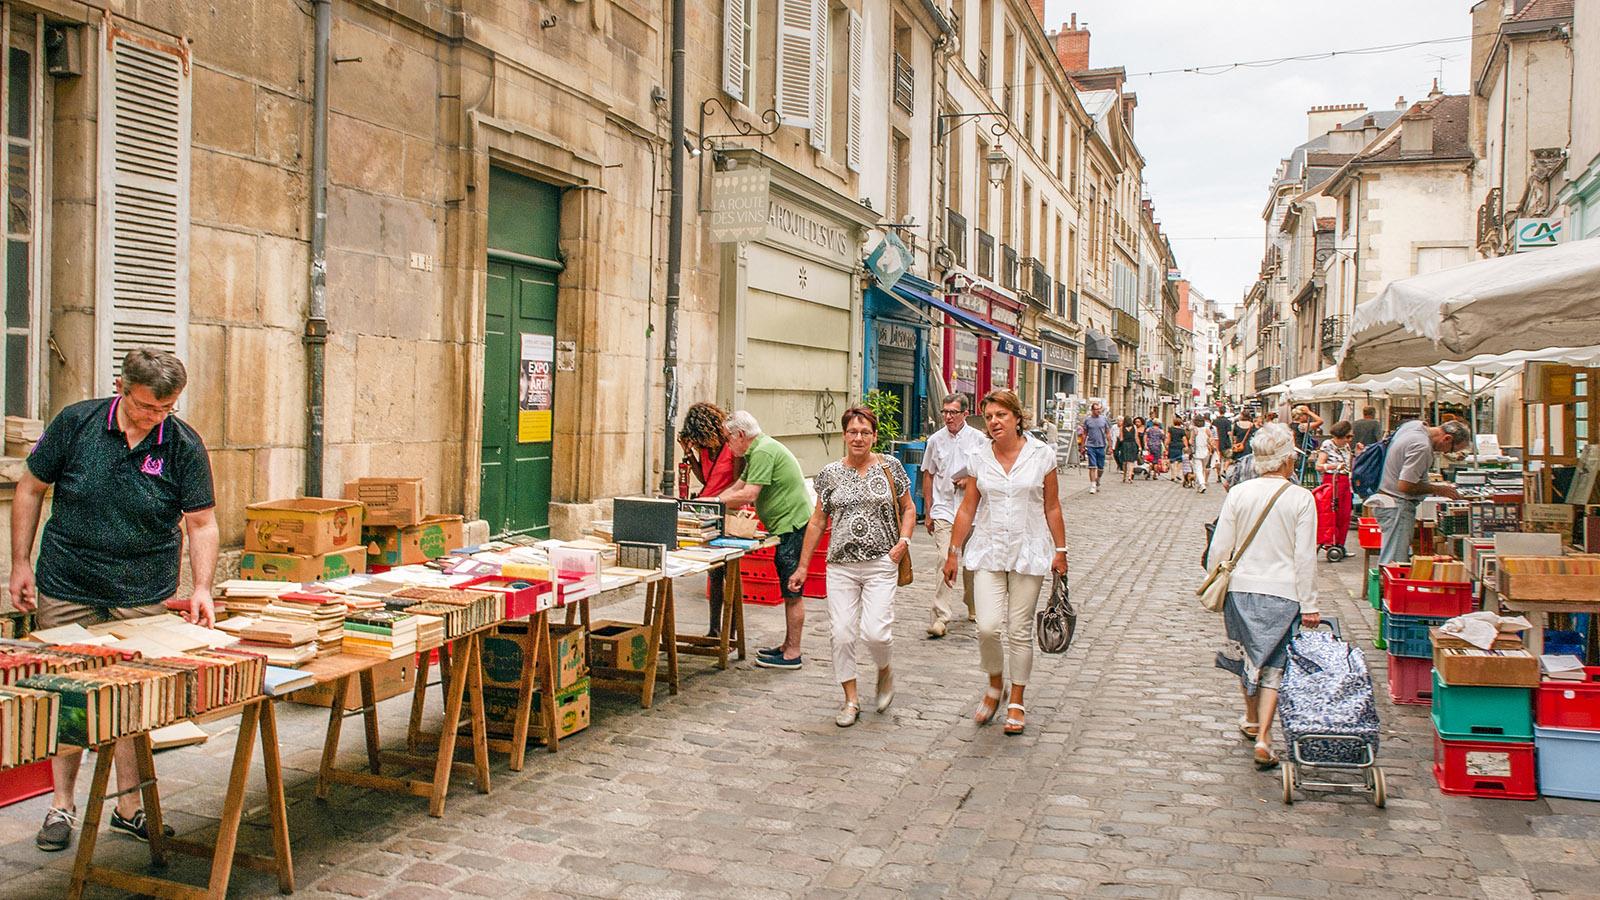 Das bunte Markttreiben des Hallenviertels von Dijon erstreckt sich auch auf die Gassen ringsum. Foto: Hilke Maunder